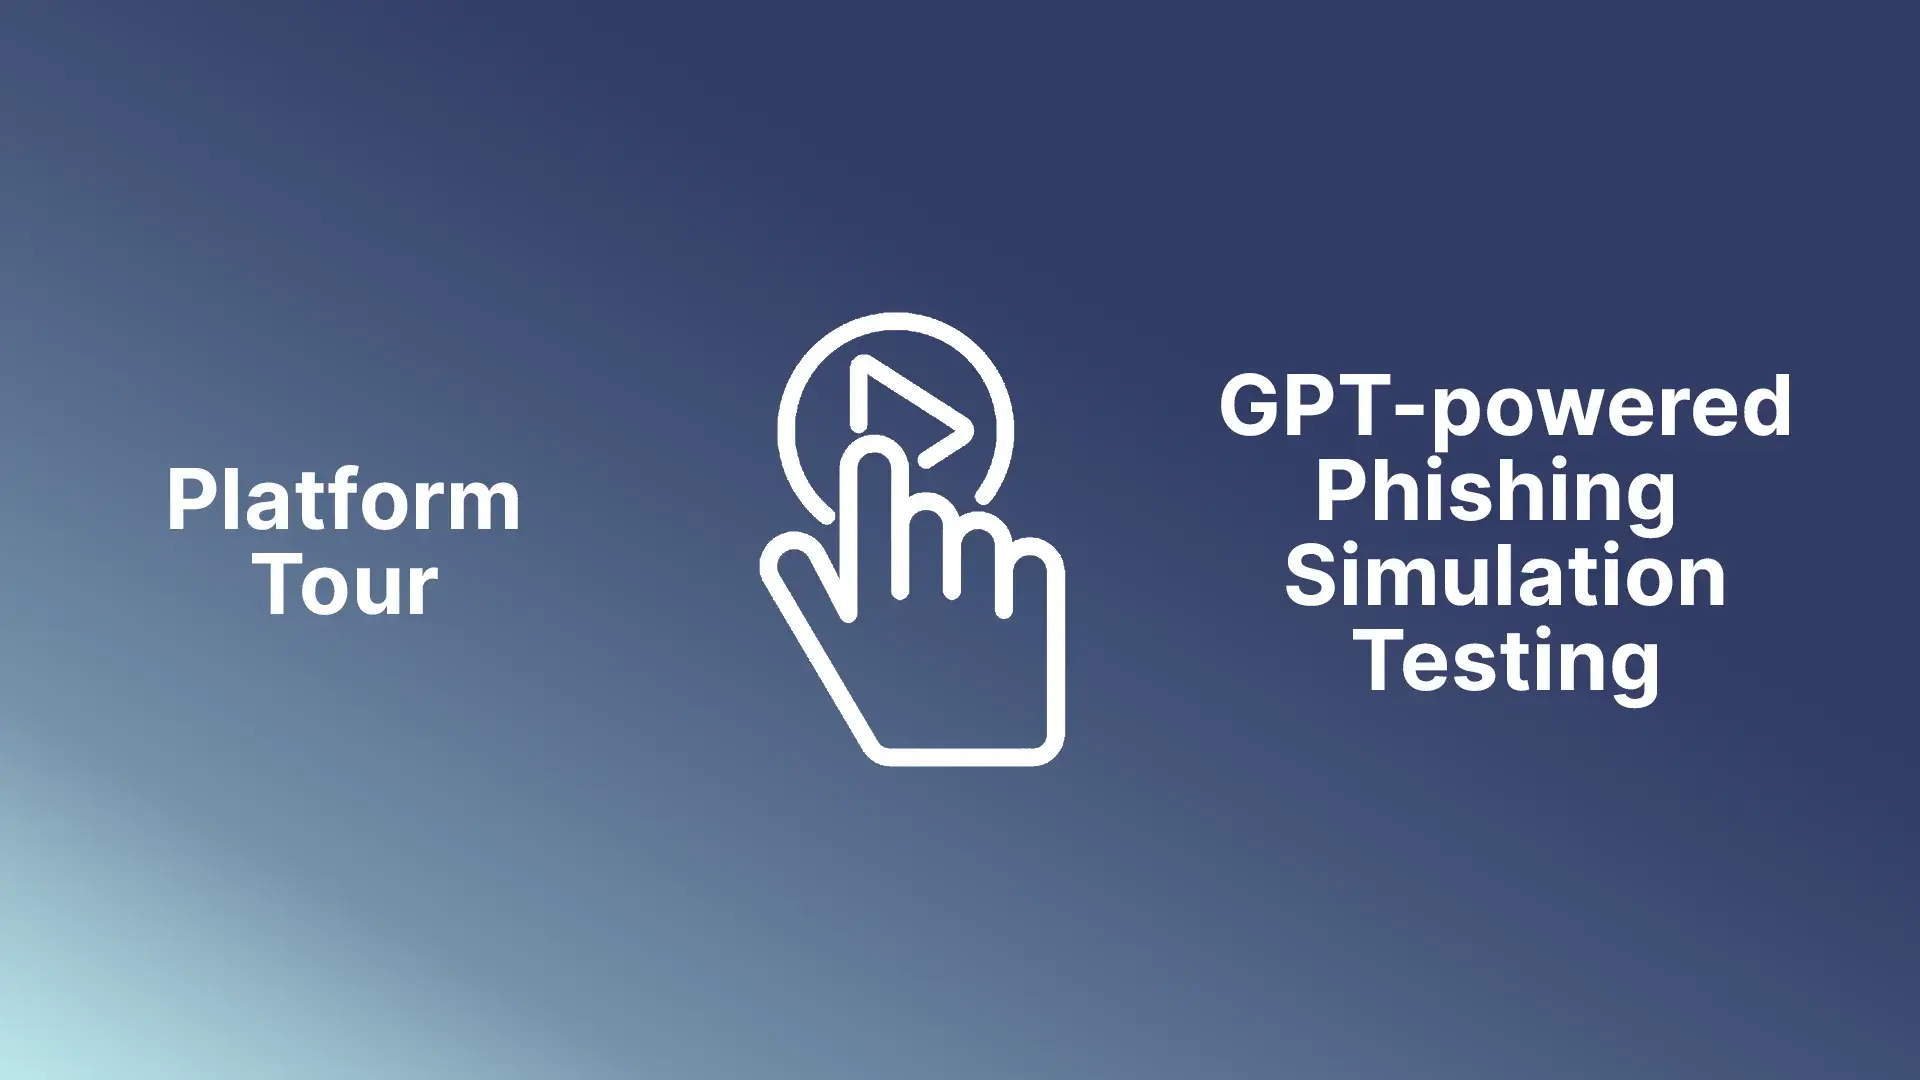 Platform Tour GPT-powered Phishing Simulation Testing